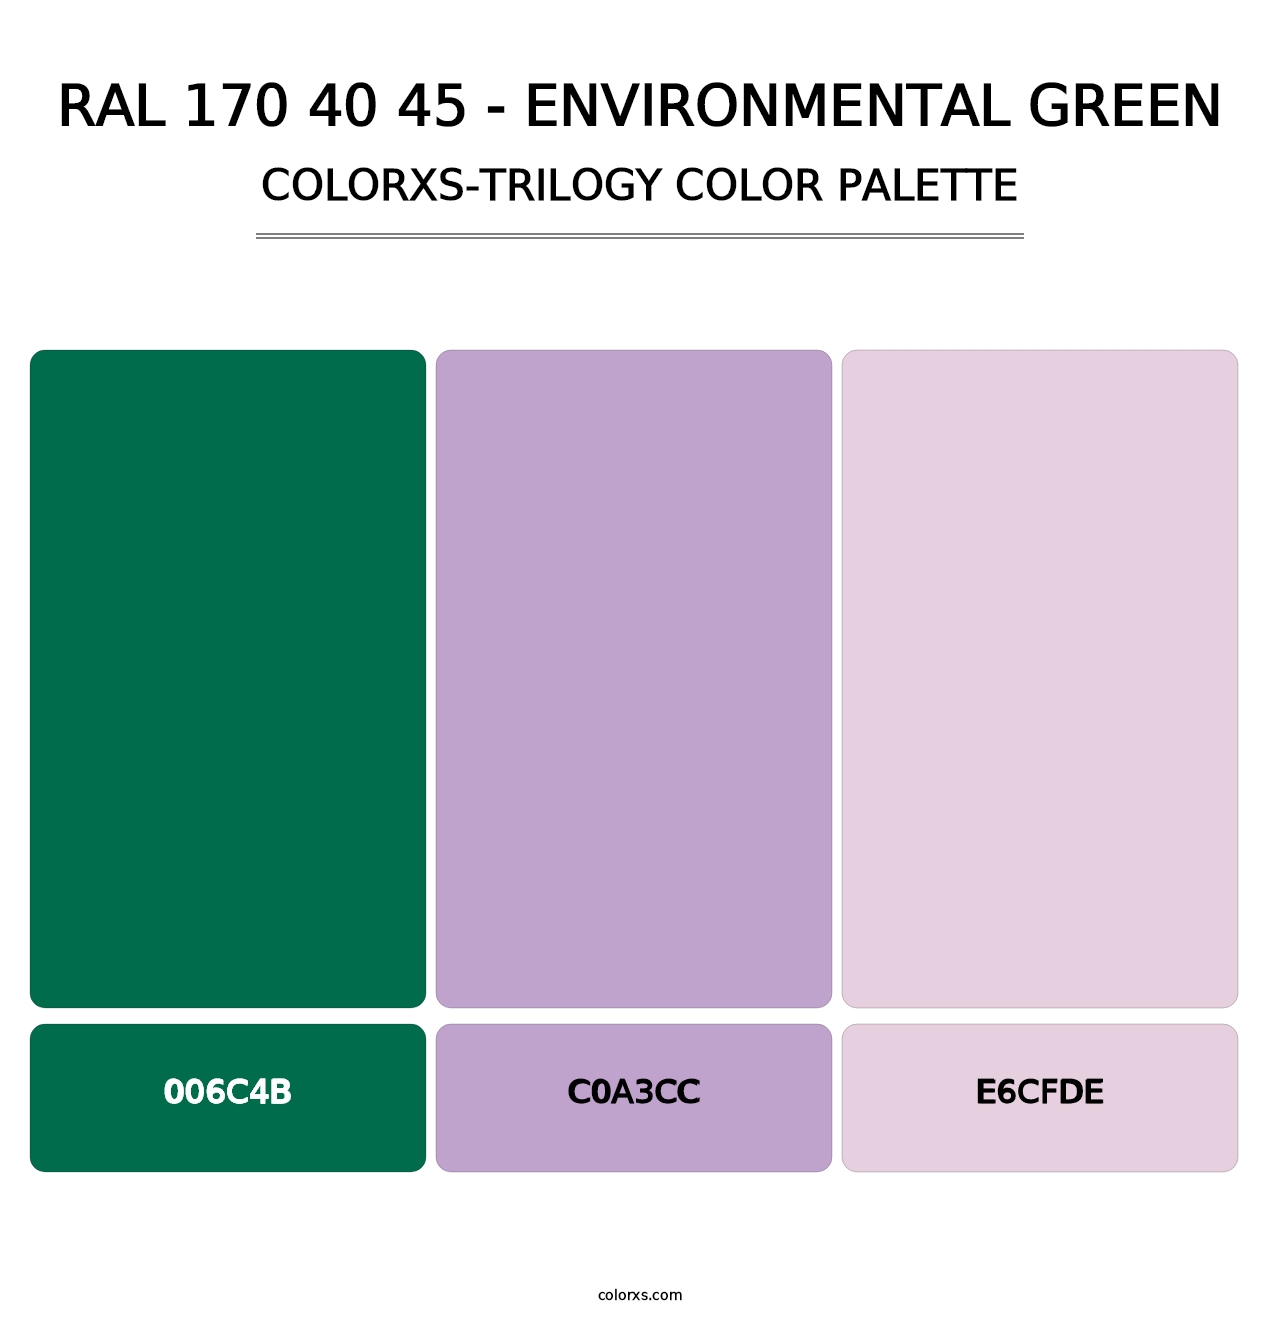 RAL 170 40 45 - Environmental Green - Colorxs Trilogy Palette